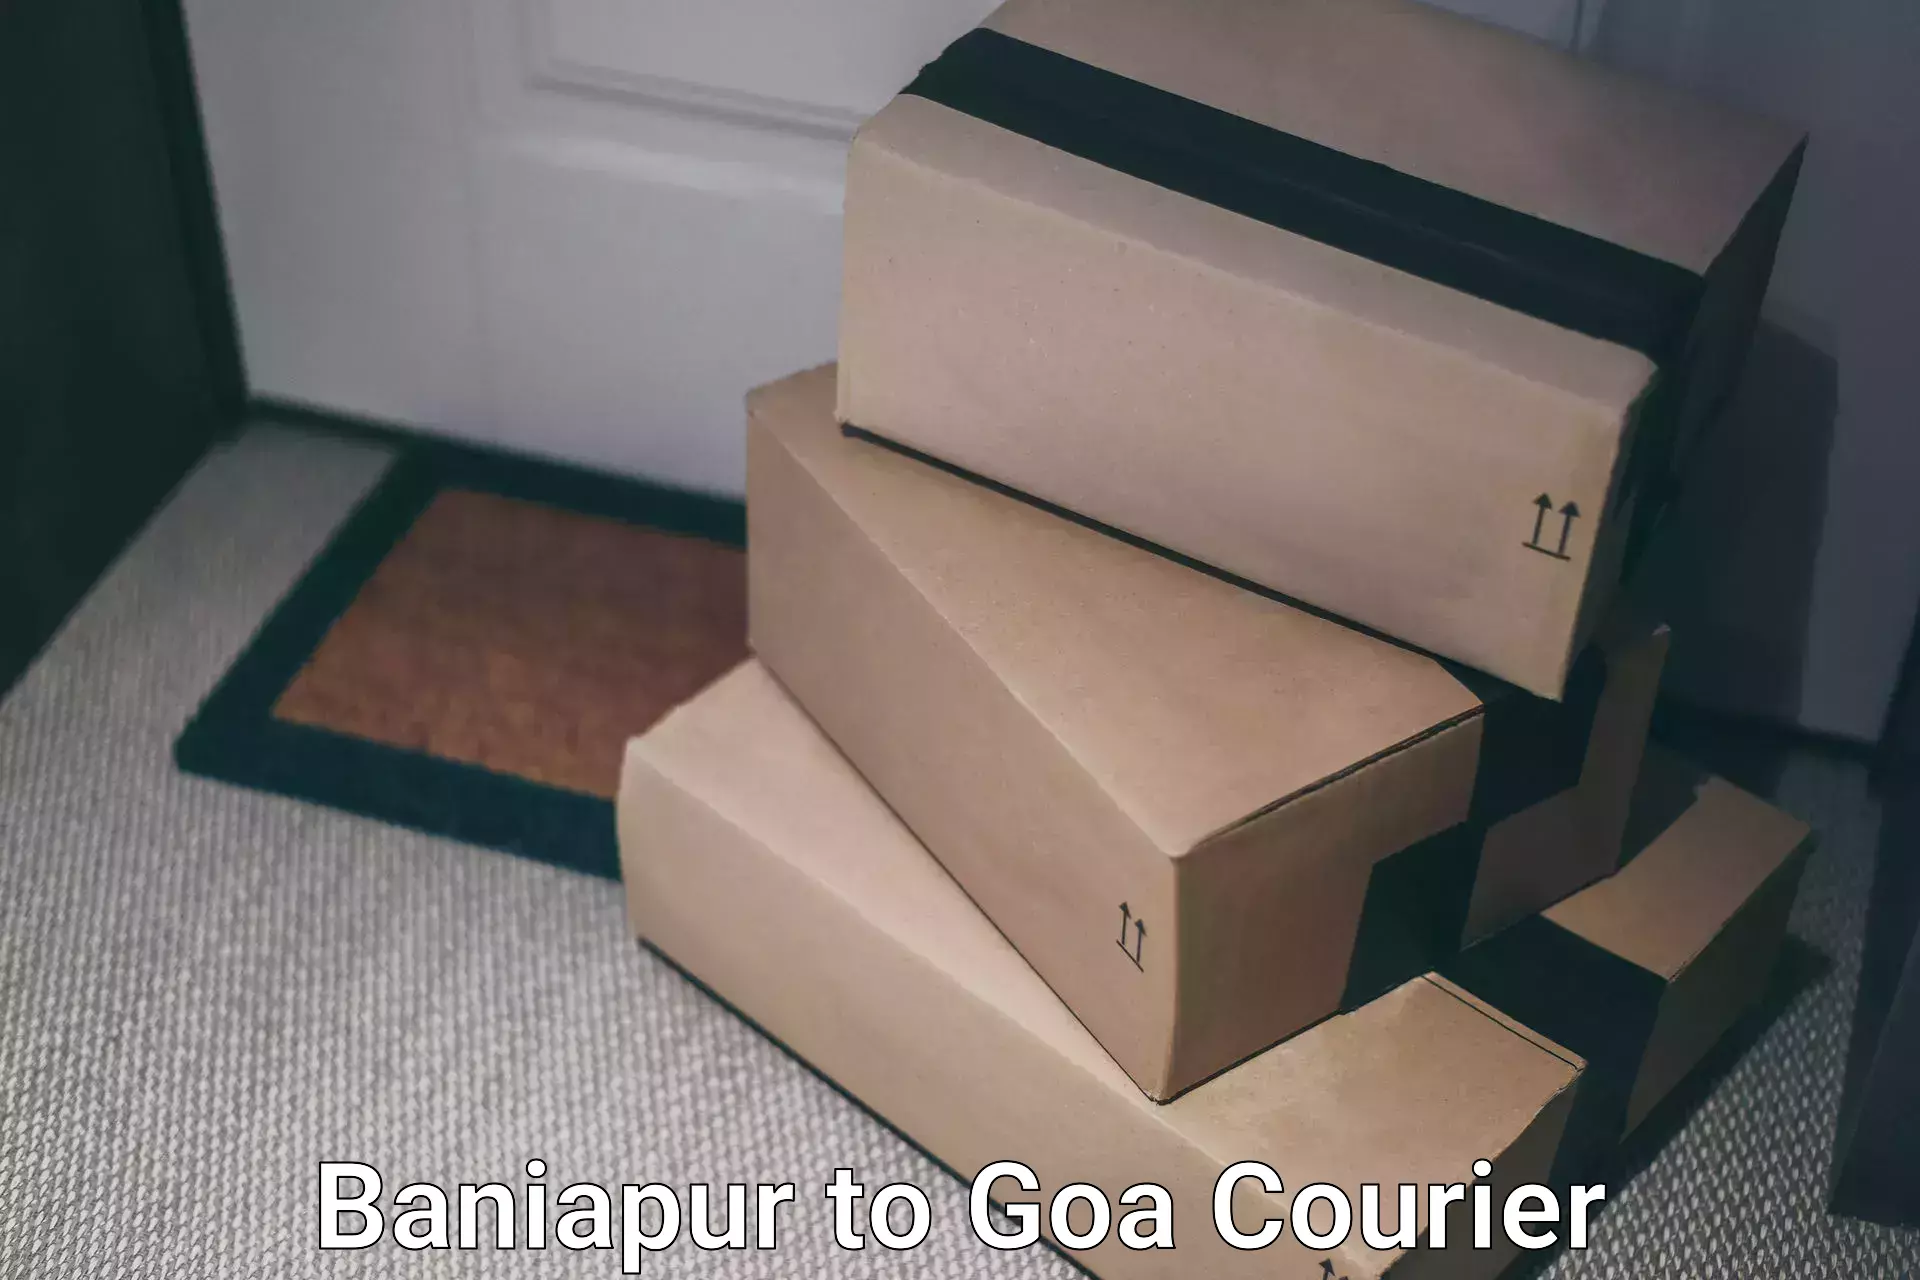 Premium courier solutions Baniapur to IIT Goa